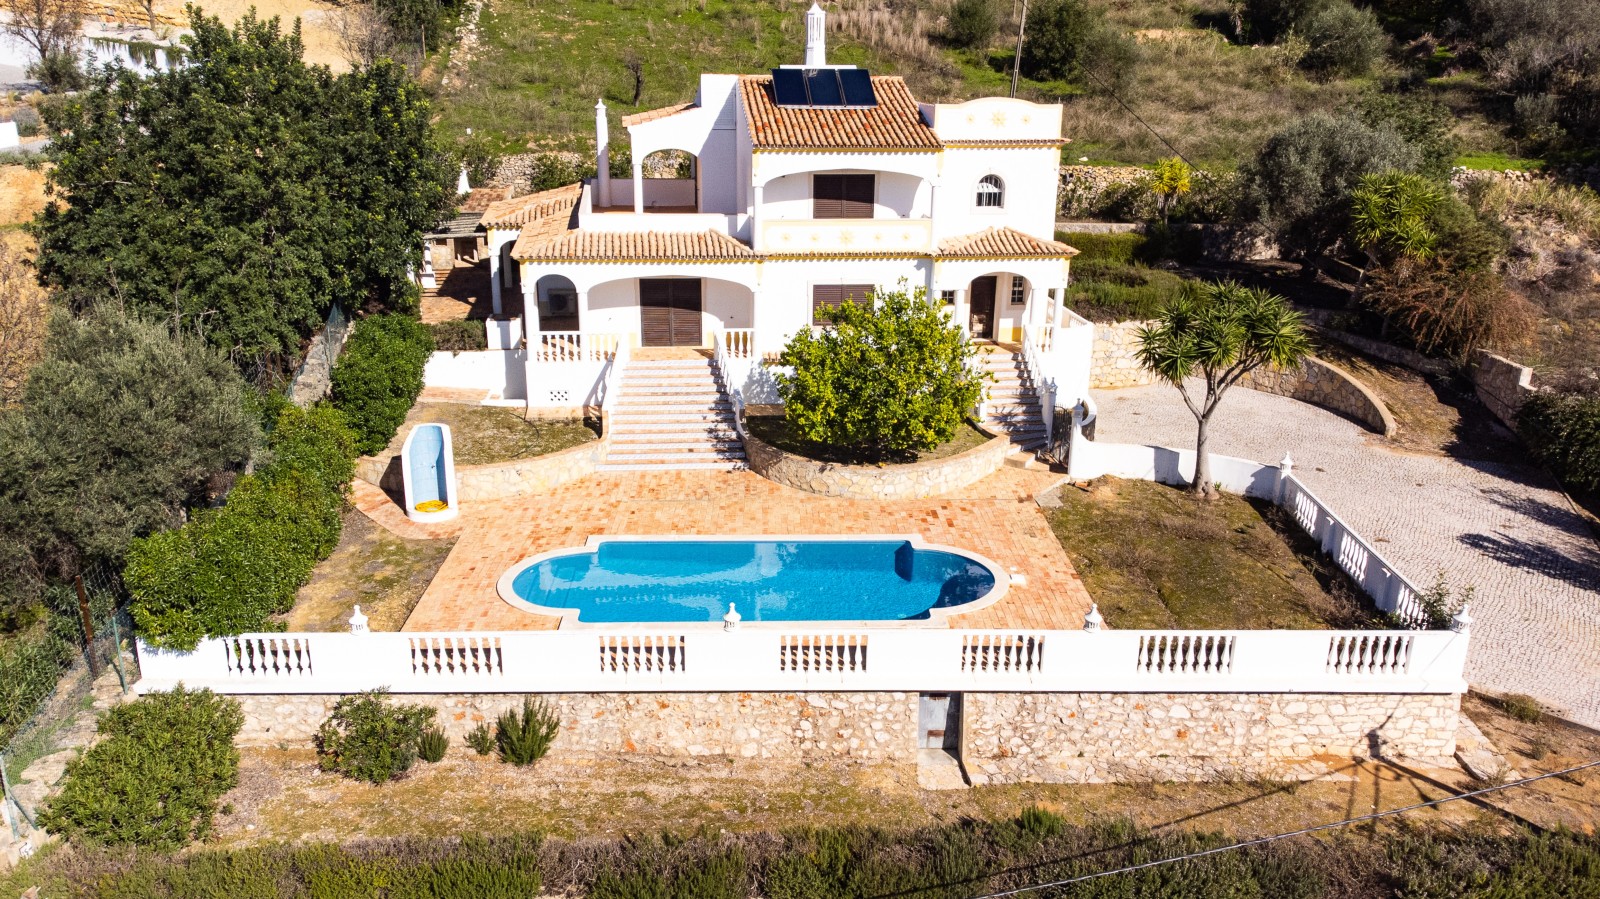 Moradia V4, com piscina, para venda, em Boliqueime, Loulé, Algarve_267417